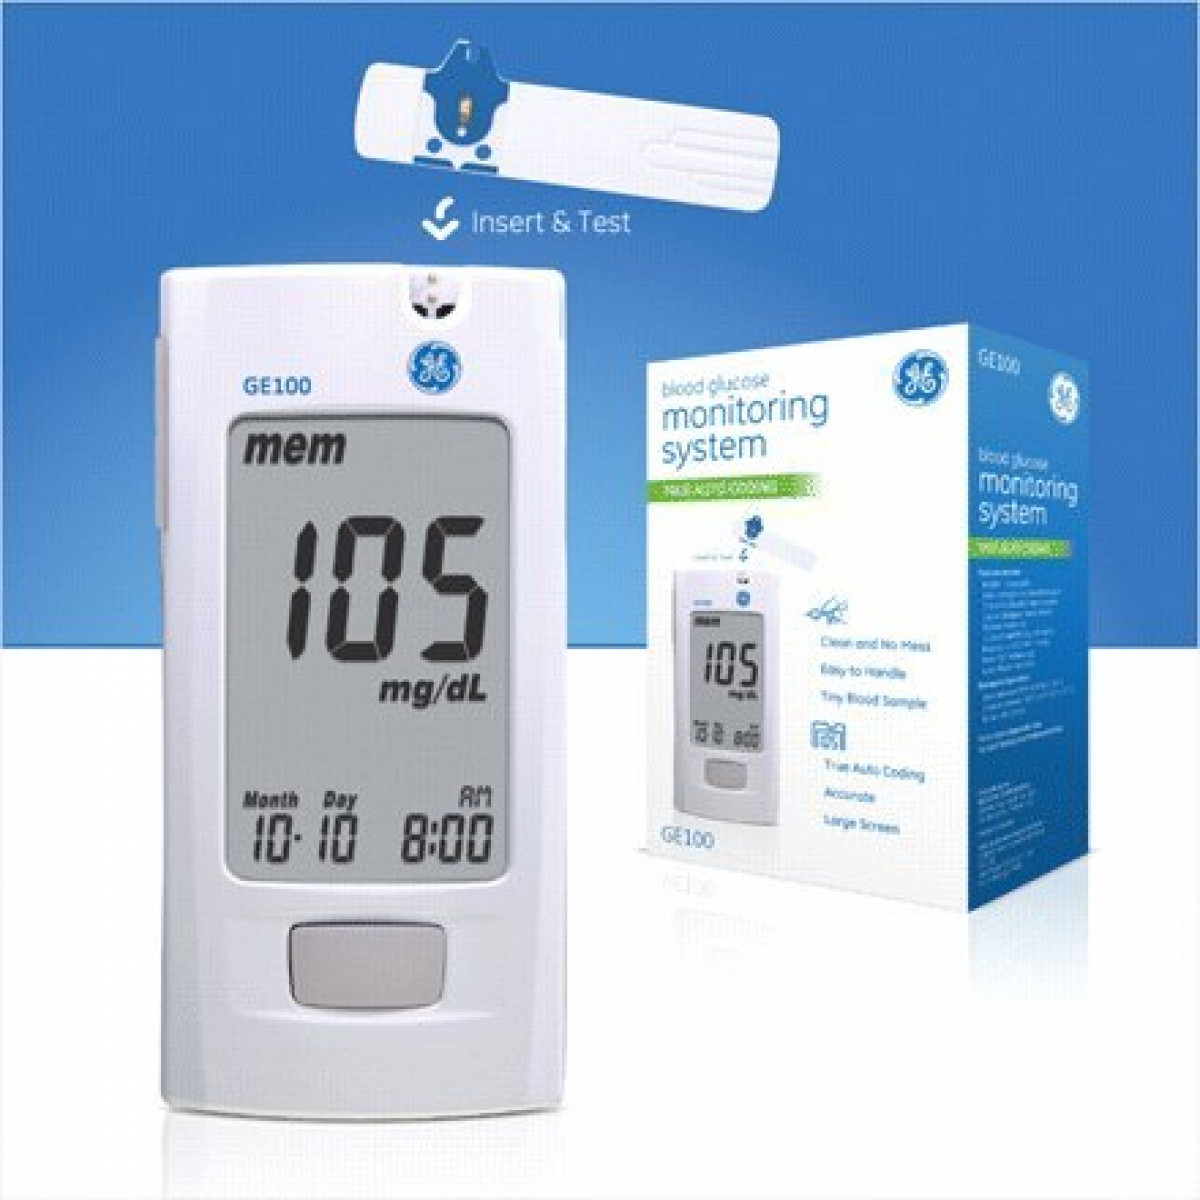 BIONIME GE100 Blood Glucose Meter Kit